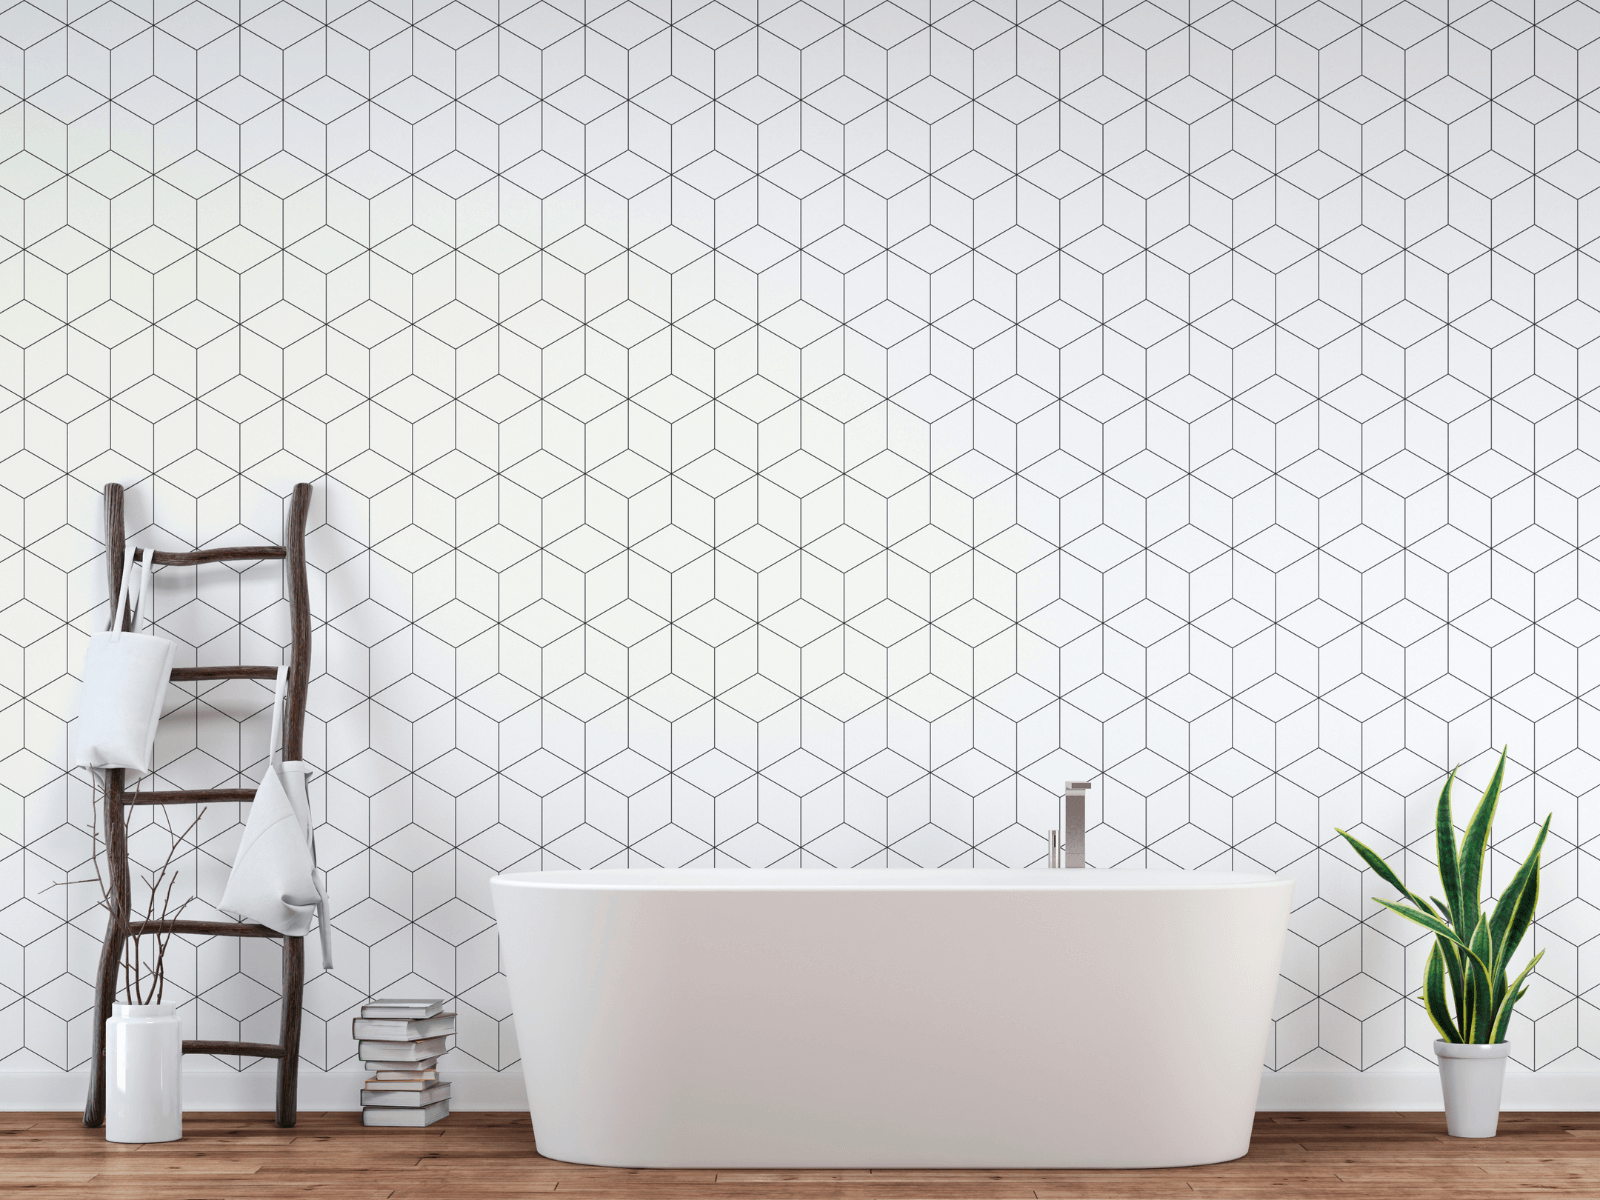 Wallpaper Design In Bathroom